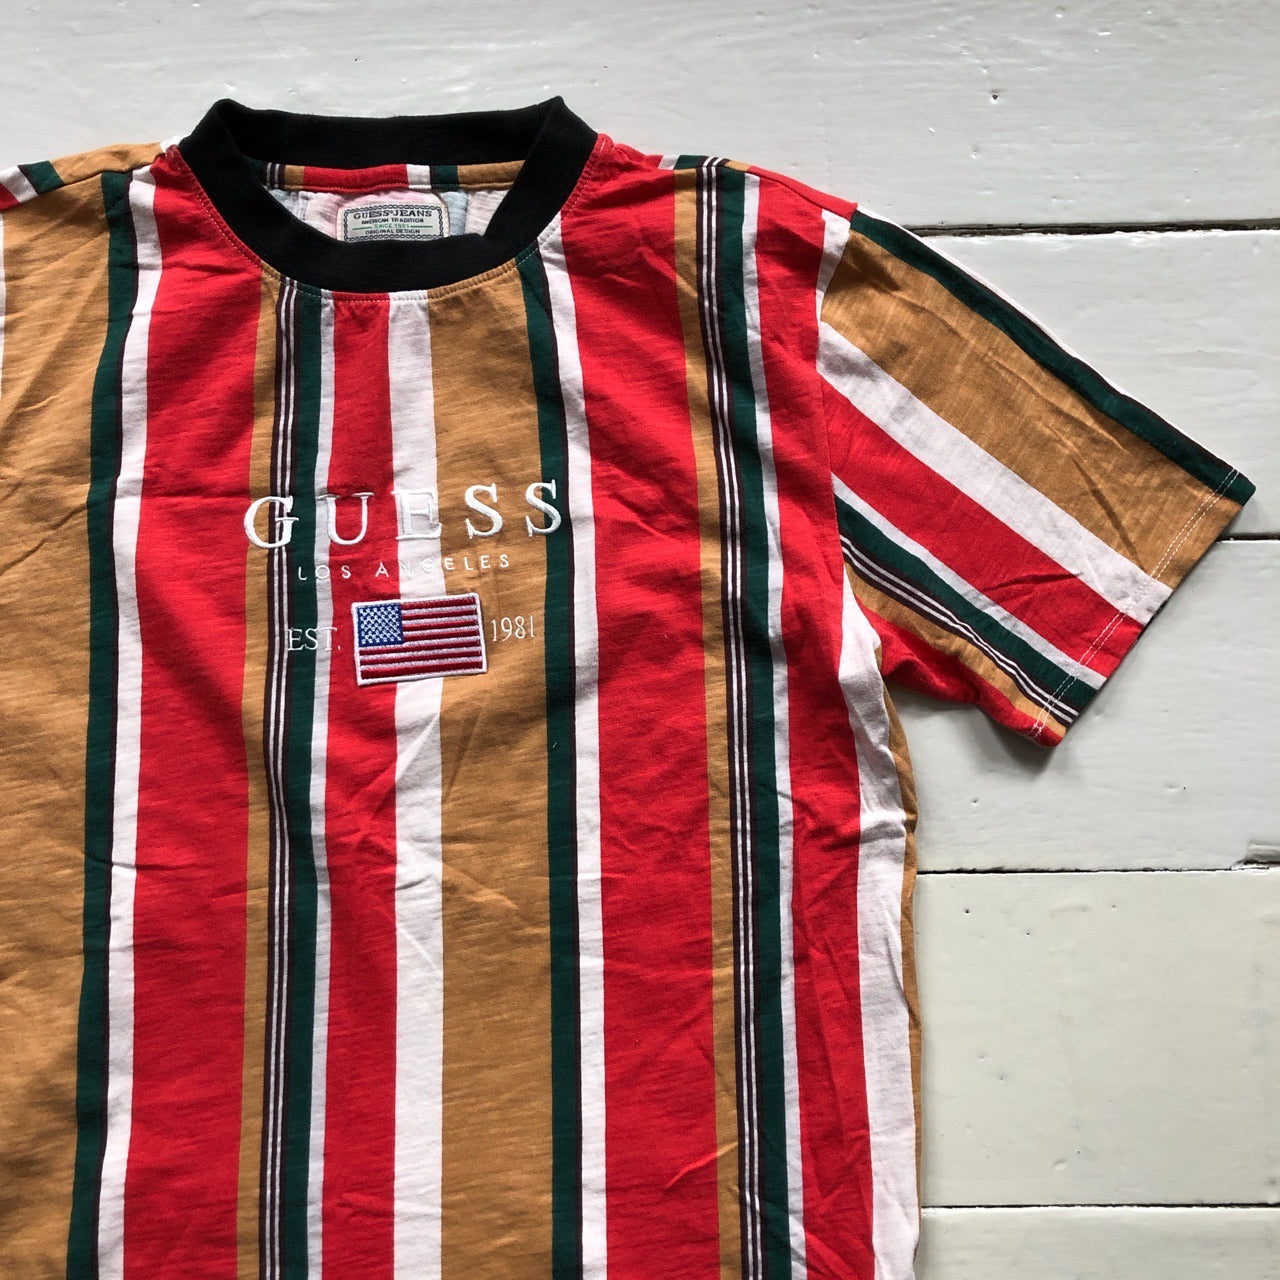 Guess USA Striped T Shirt (Small)